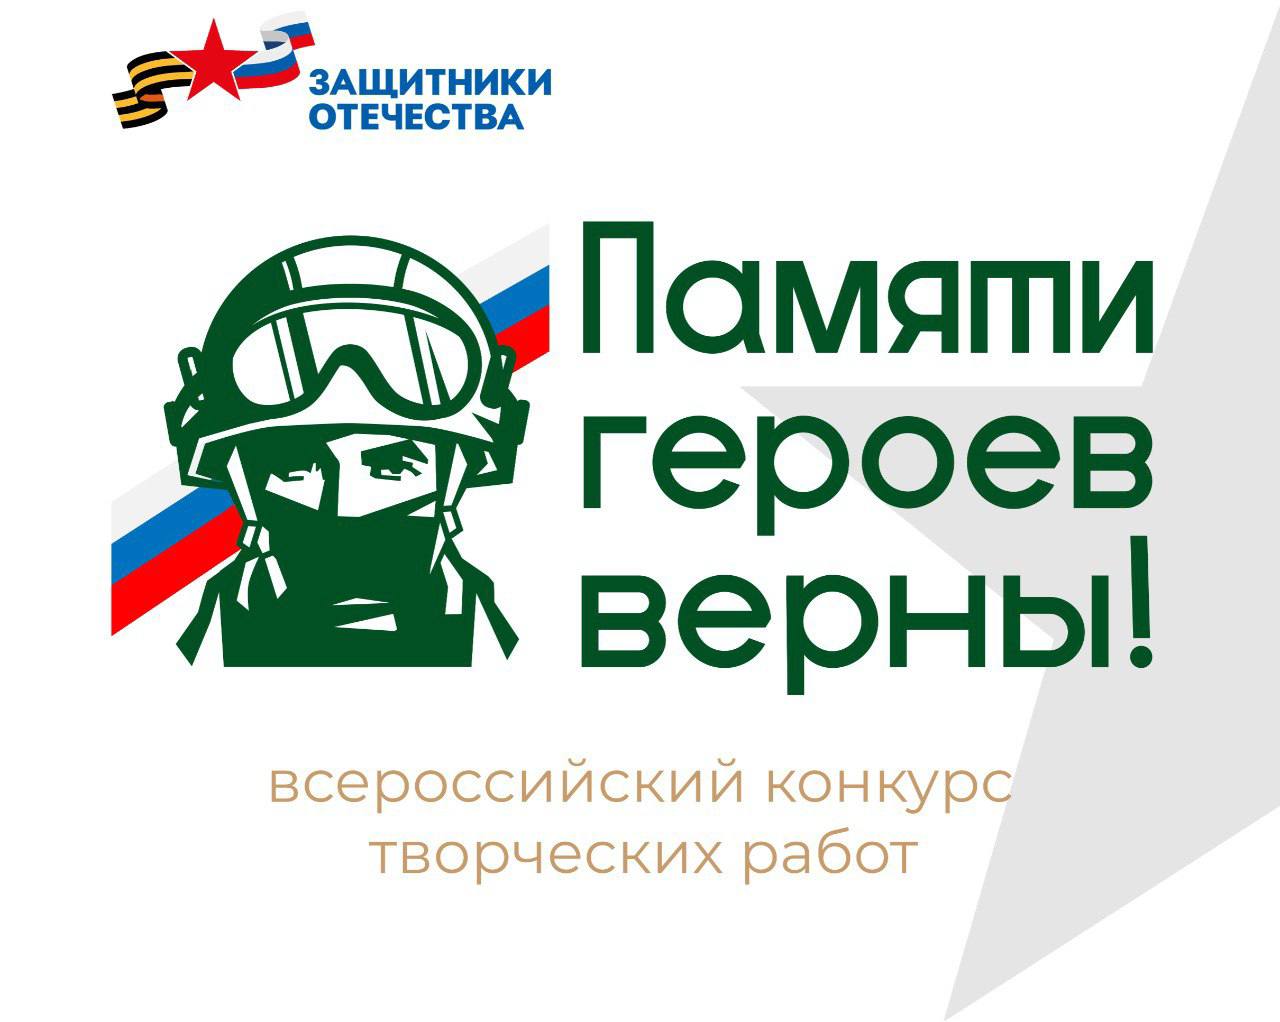 Томичей приглашают принять участие во всероссийском конкурсе «Памяти героев верны!».